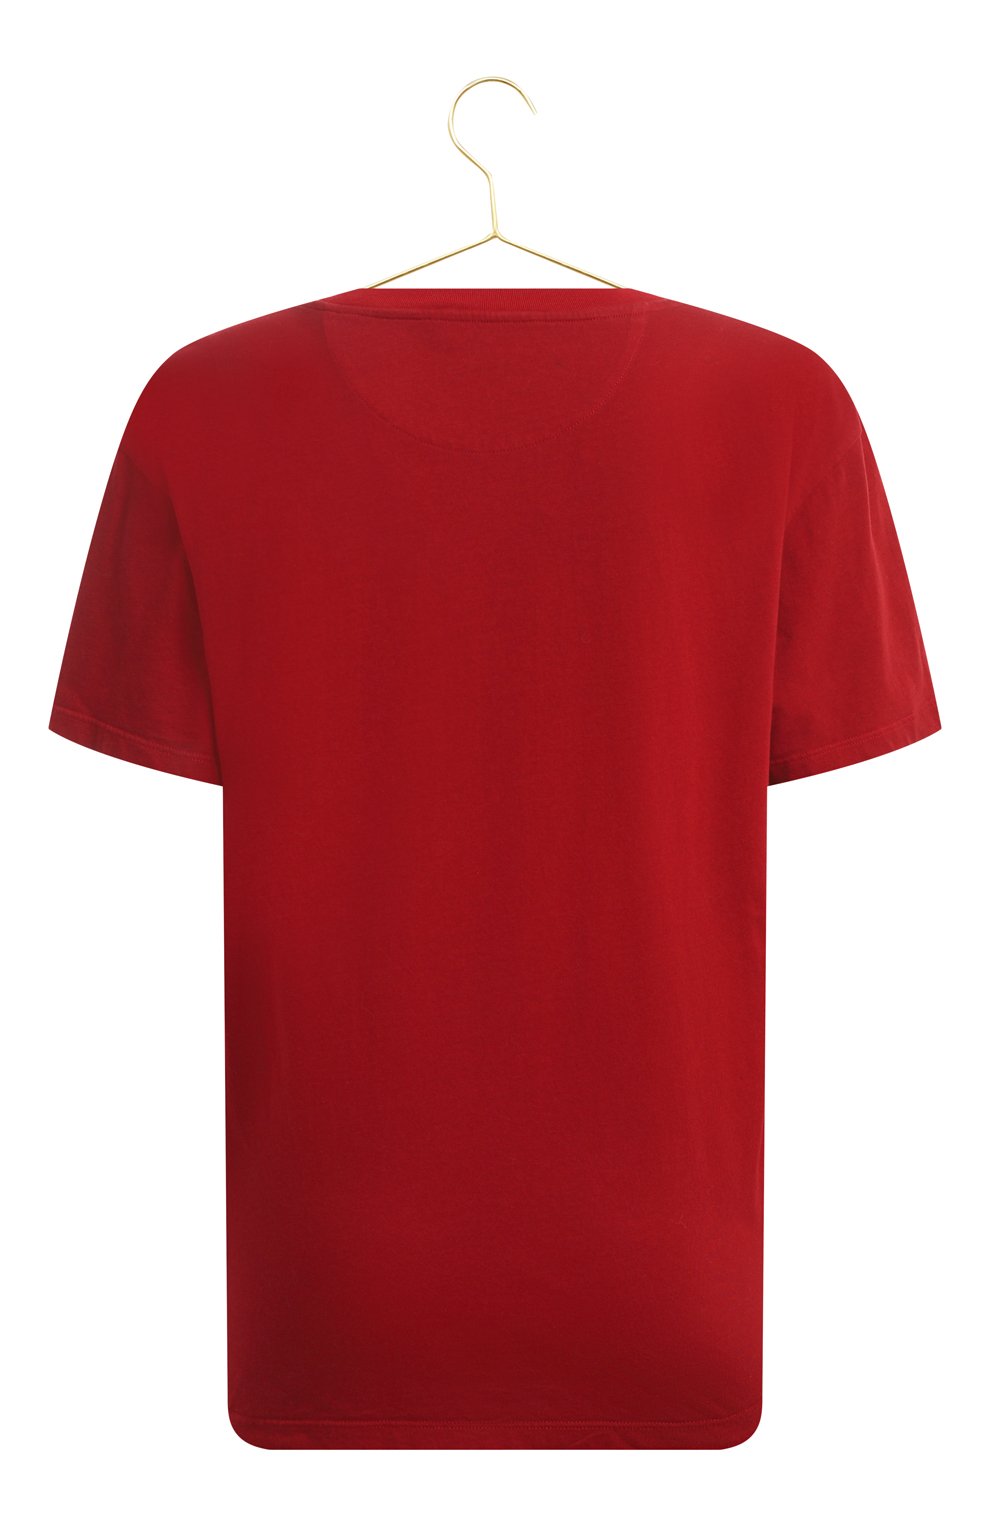 Хлопковая футболка | Valentino | Красный - 2